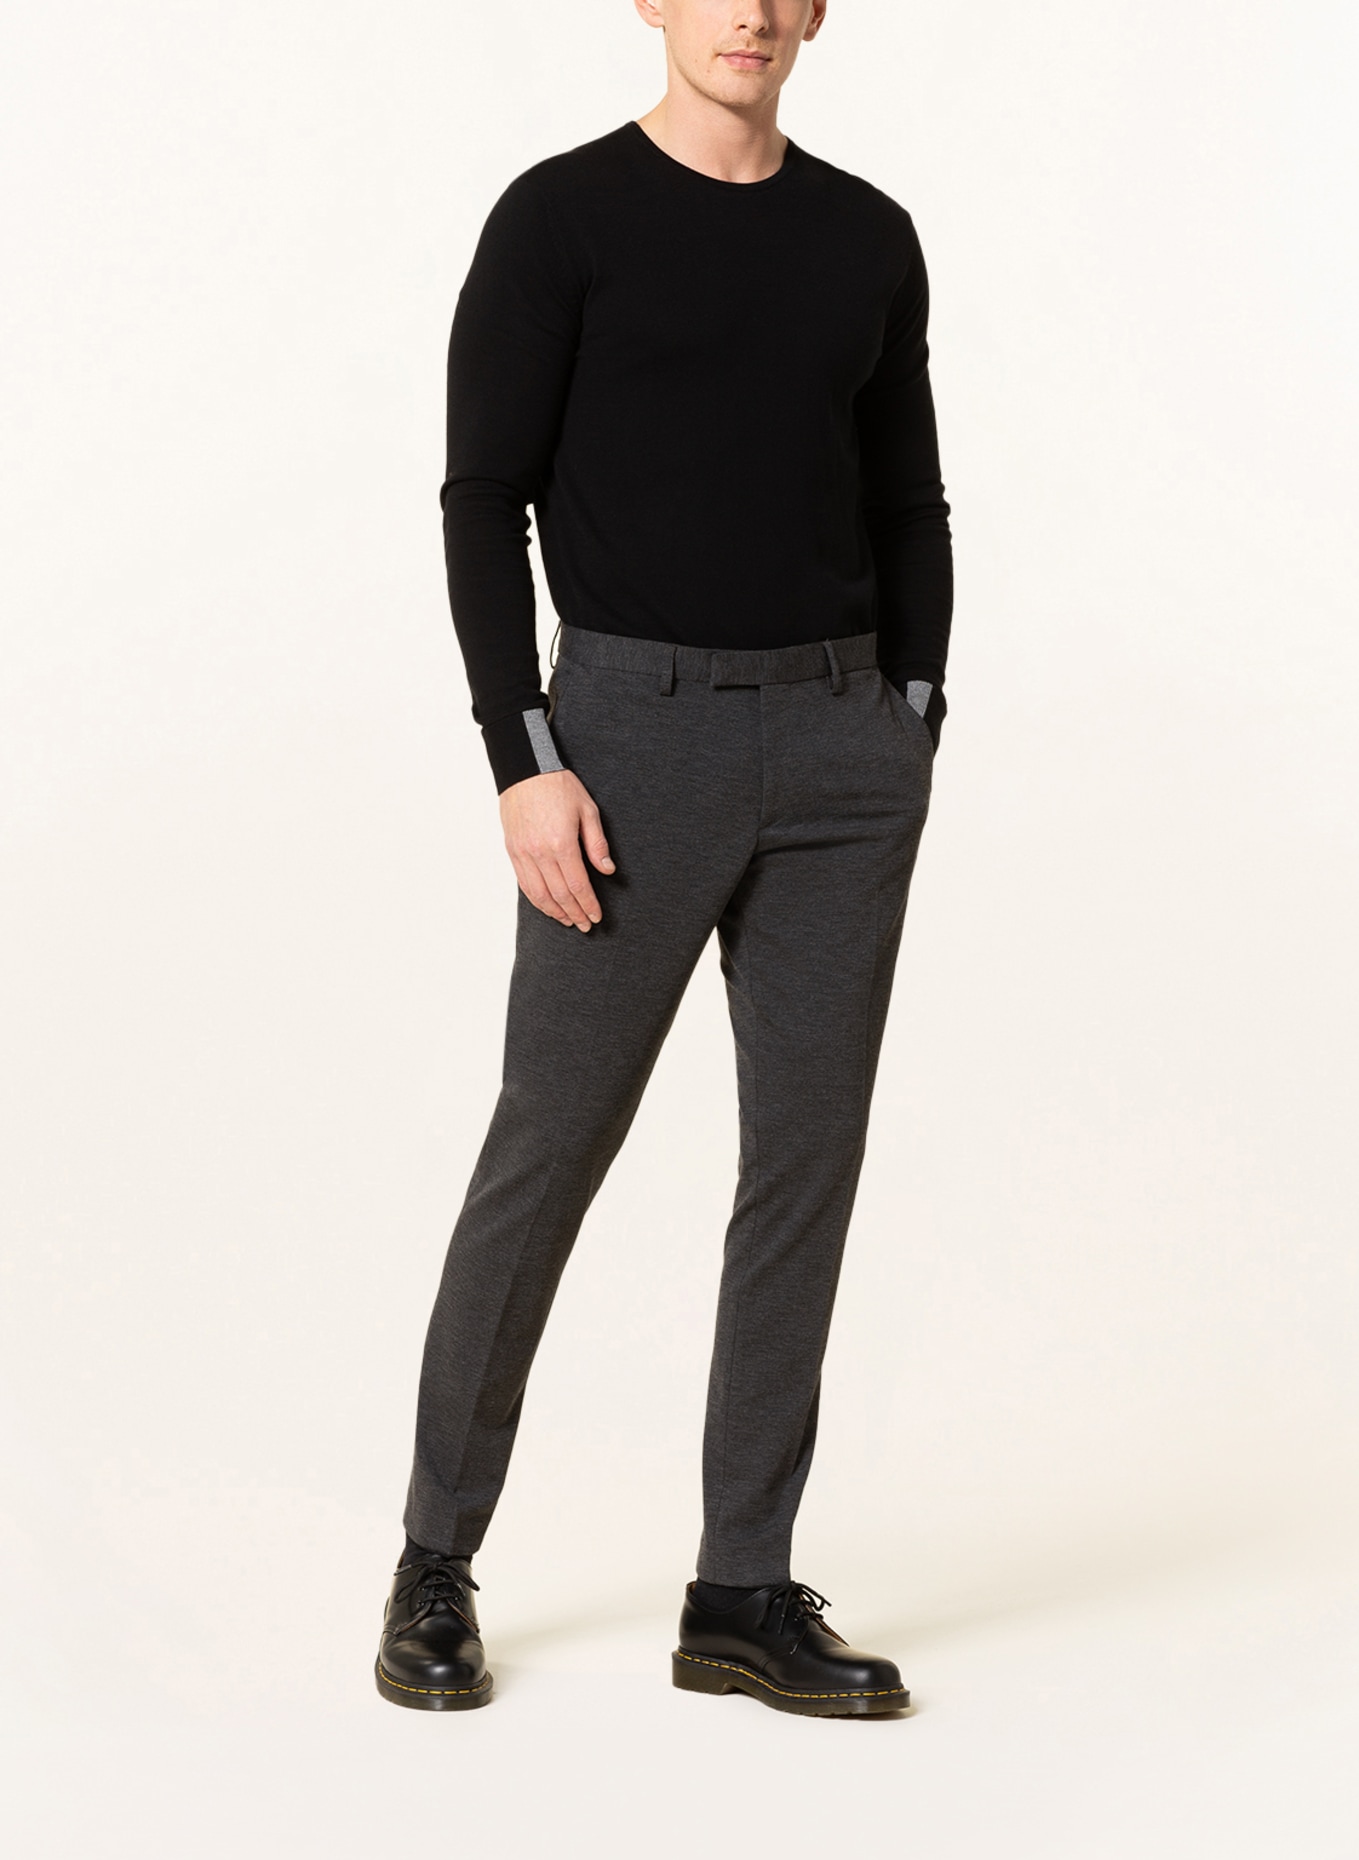 PAUL Suit trousers slim fit, Color: 750 Charcoal (Image 3)